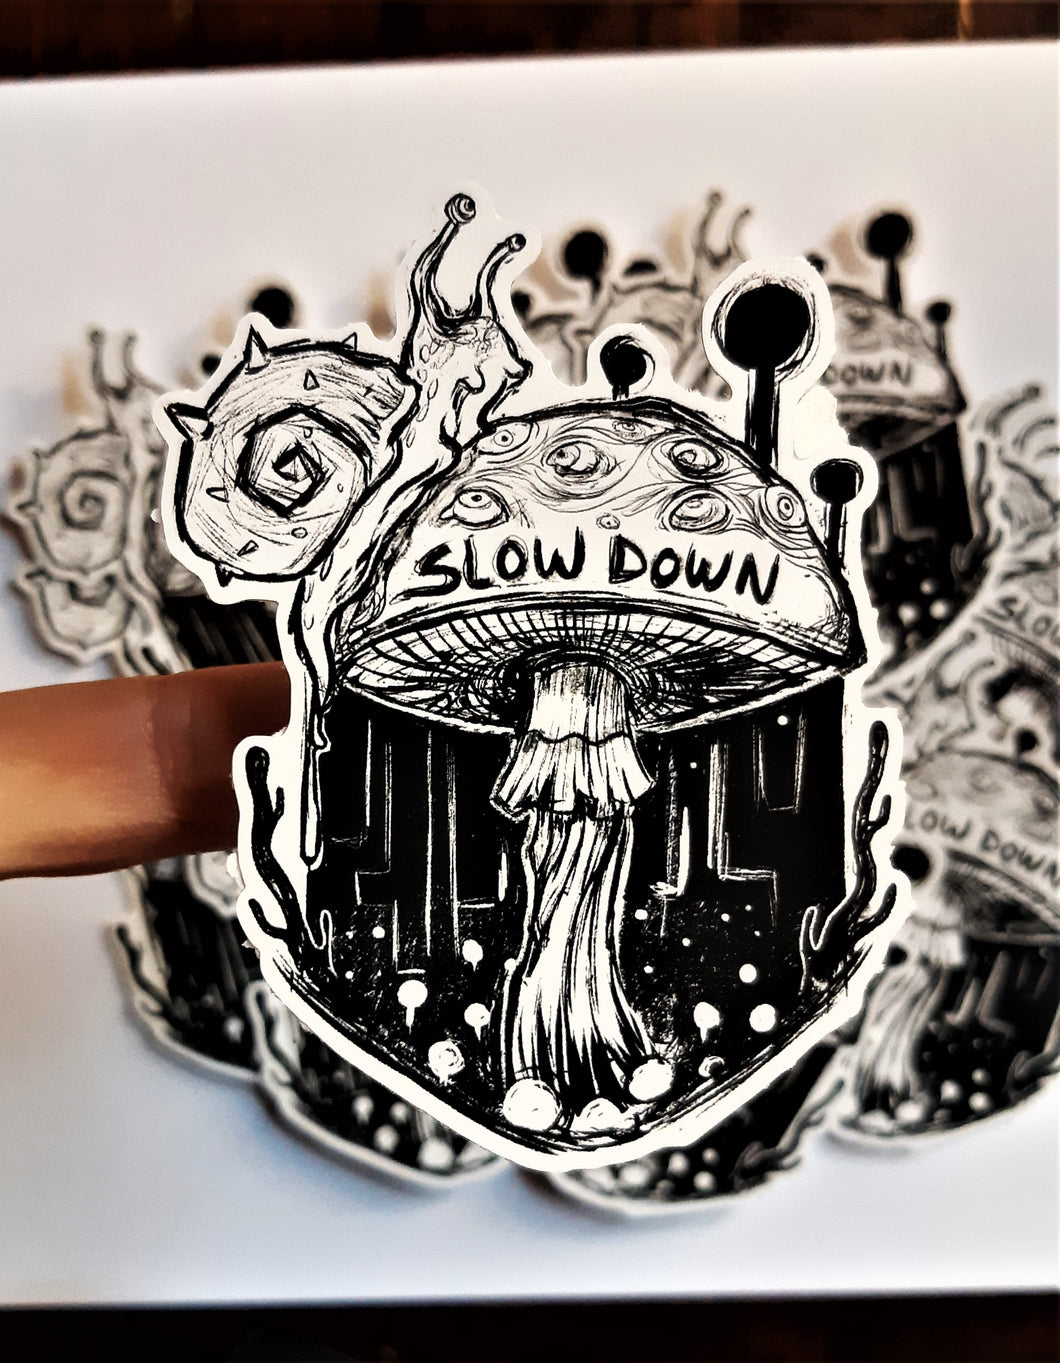 Slow down - Spiked shell snail on mushroom-  2x3 Weatherproof matte vinyl sticker